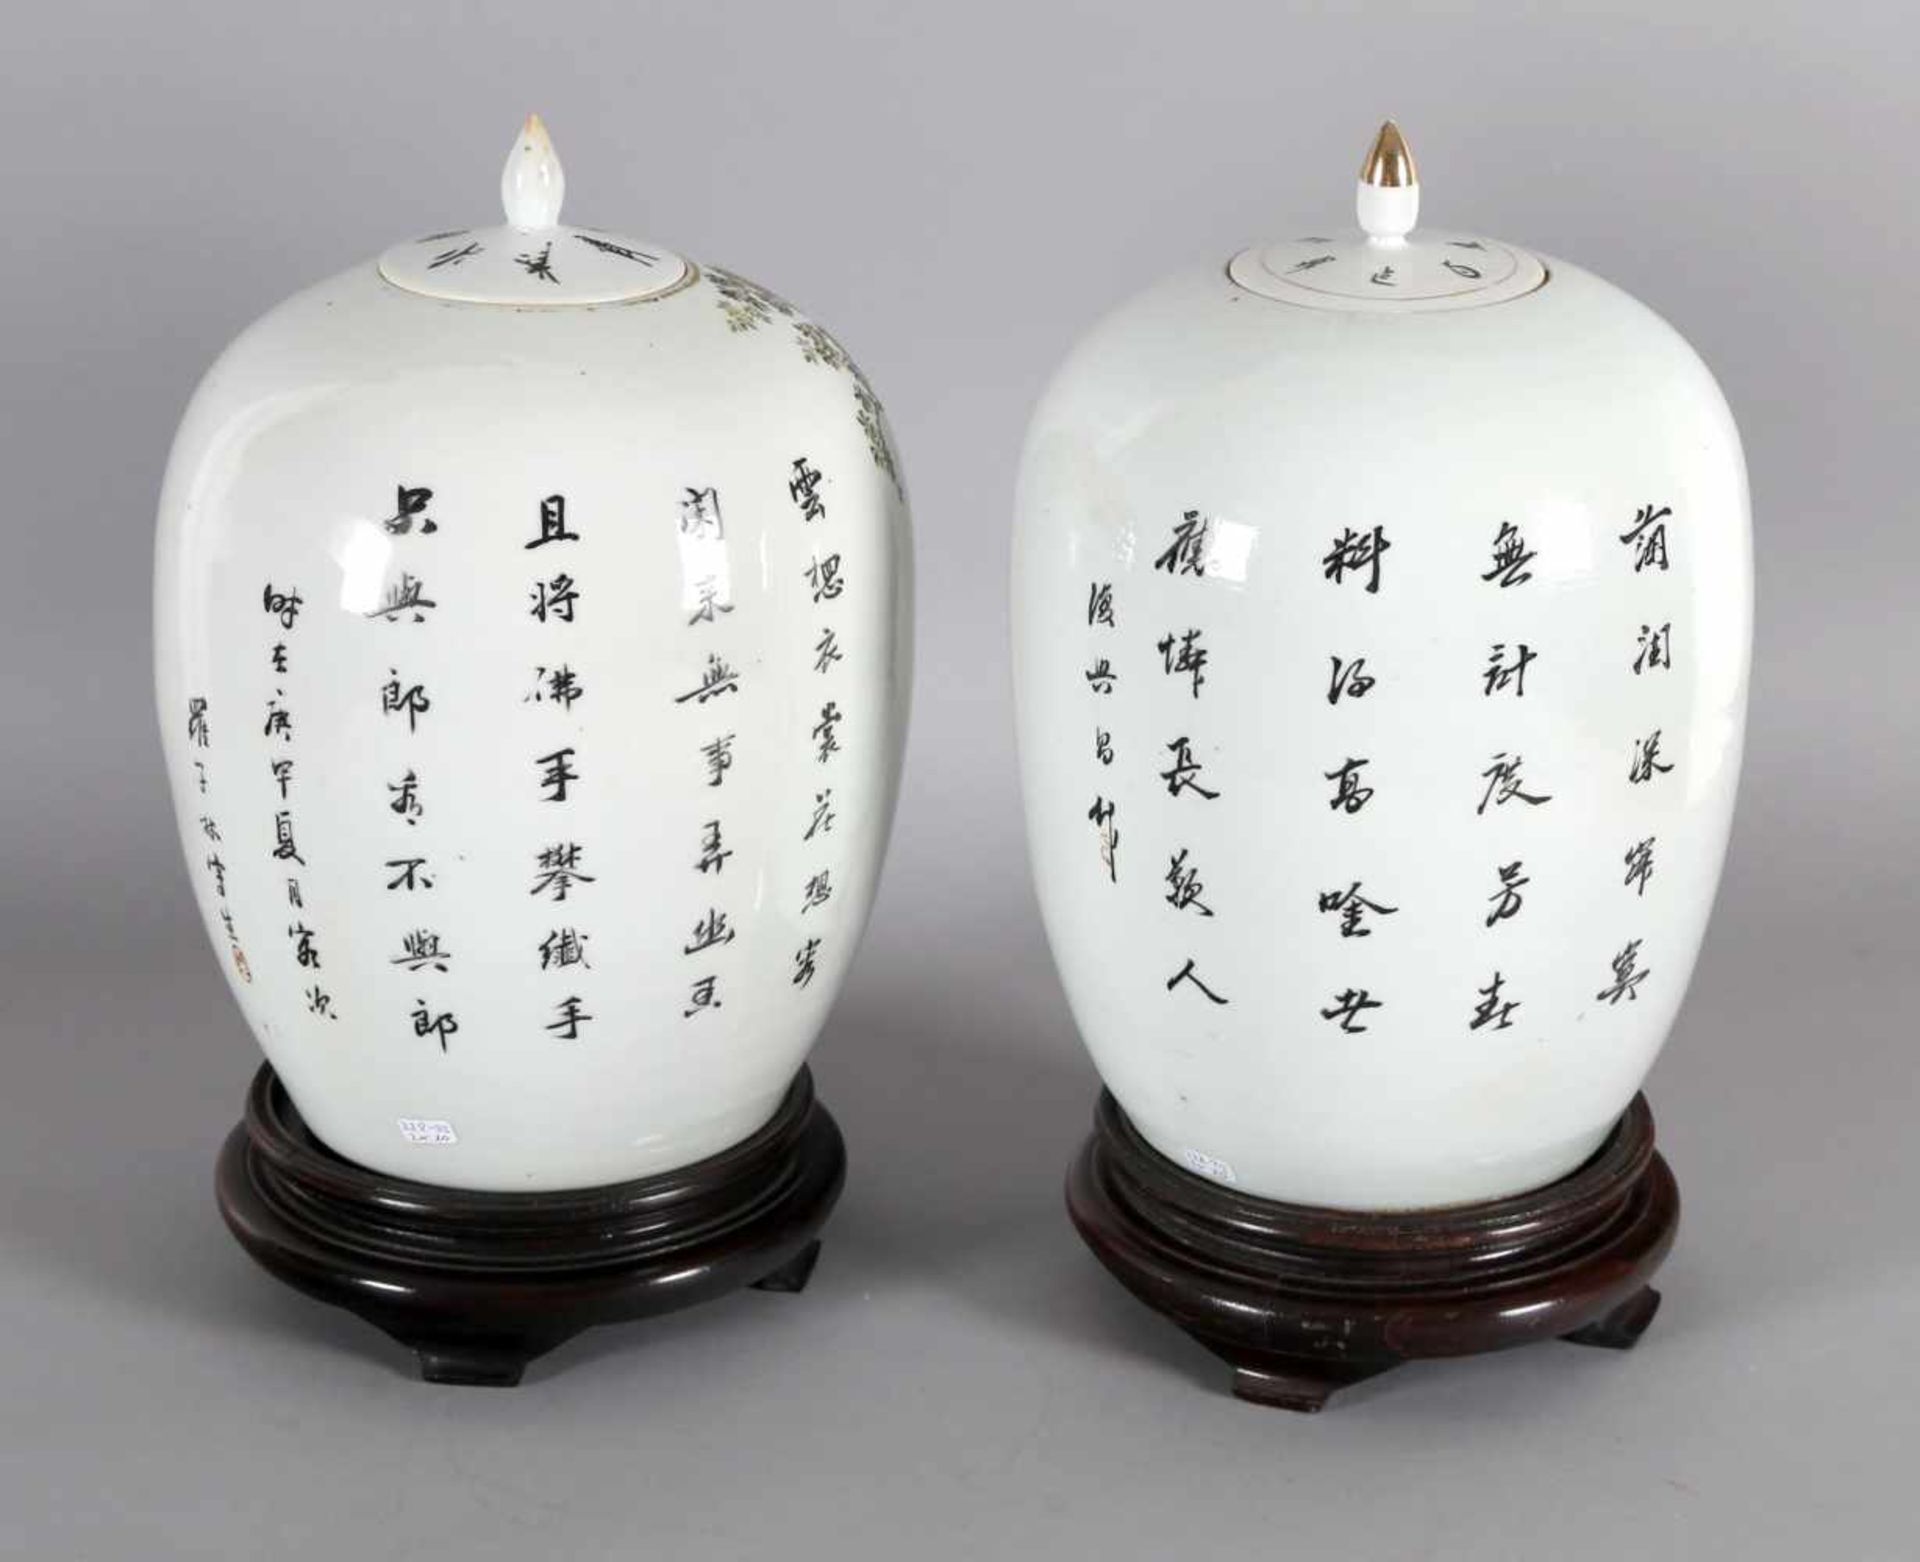 Paar Deckelvasen mit Gesellschaftsszenen, China, 19. Jh.polychromer Dekor, ovoide From, - Bild 2 aus 2